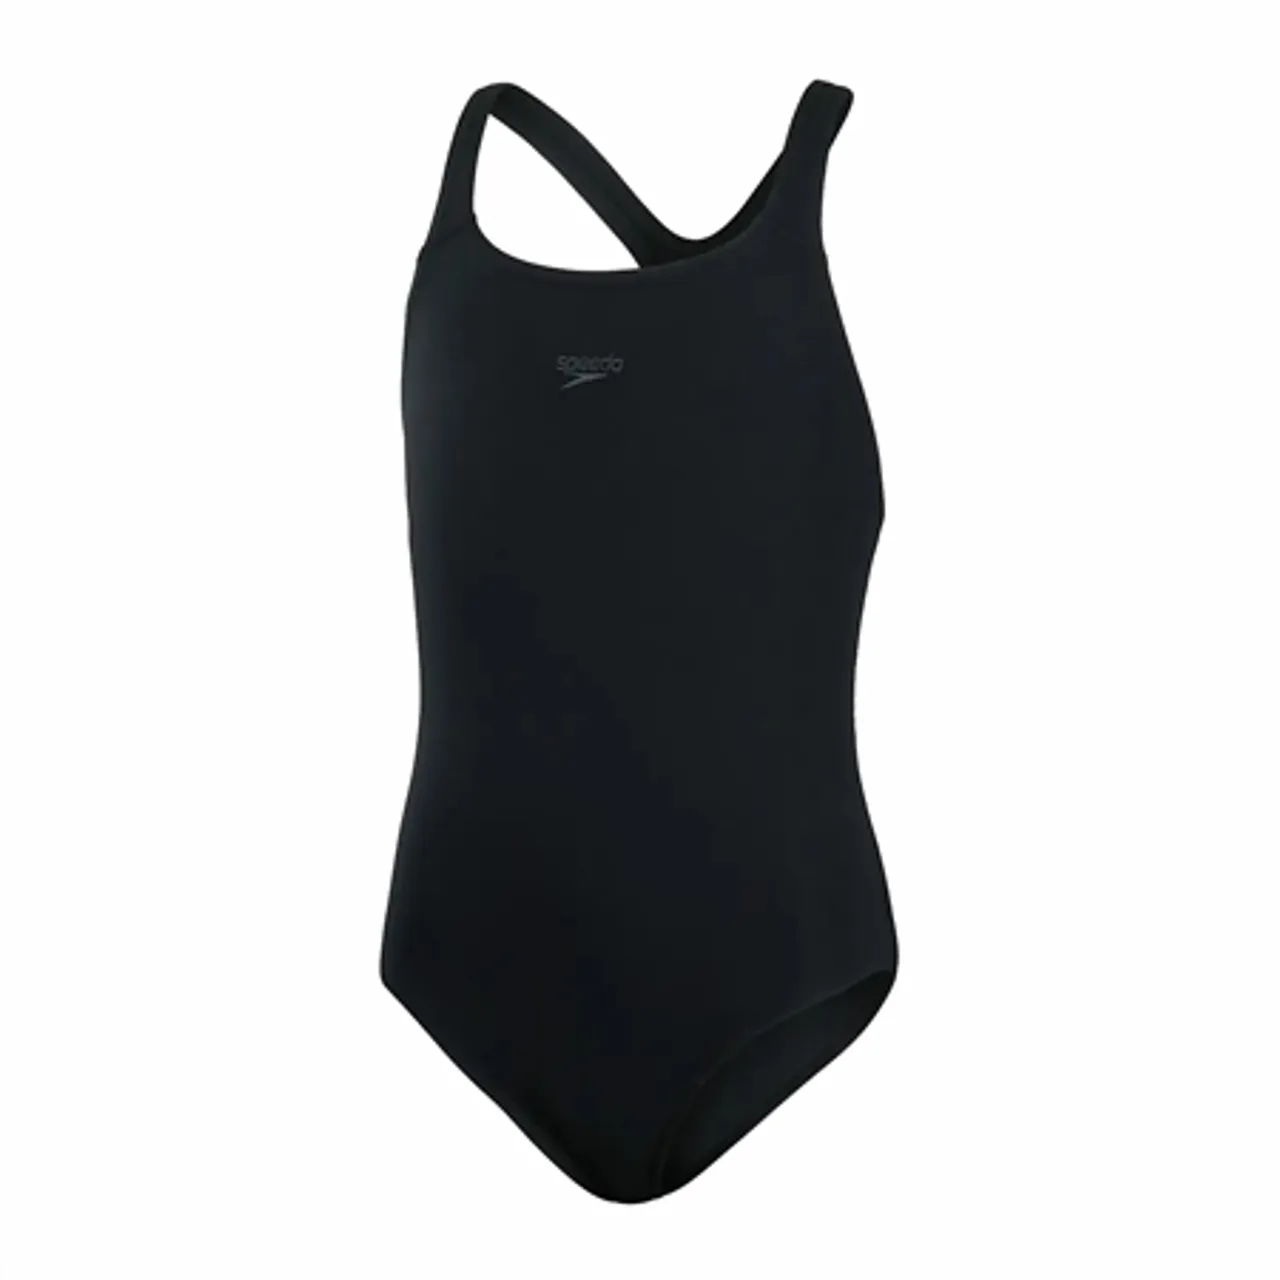 Speedo Girls Eco Endurance+ Medalist Swimsuit - Black